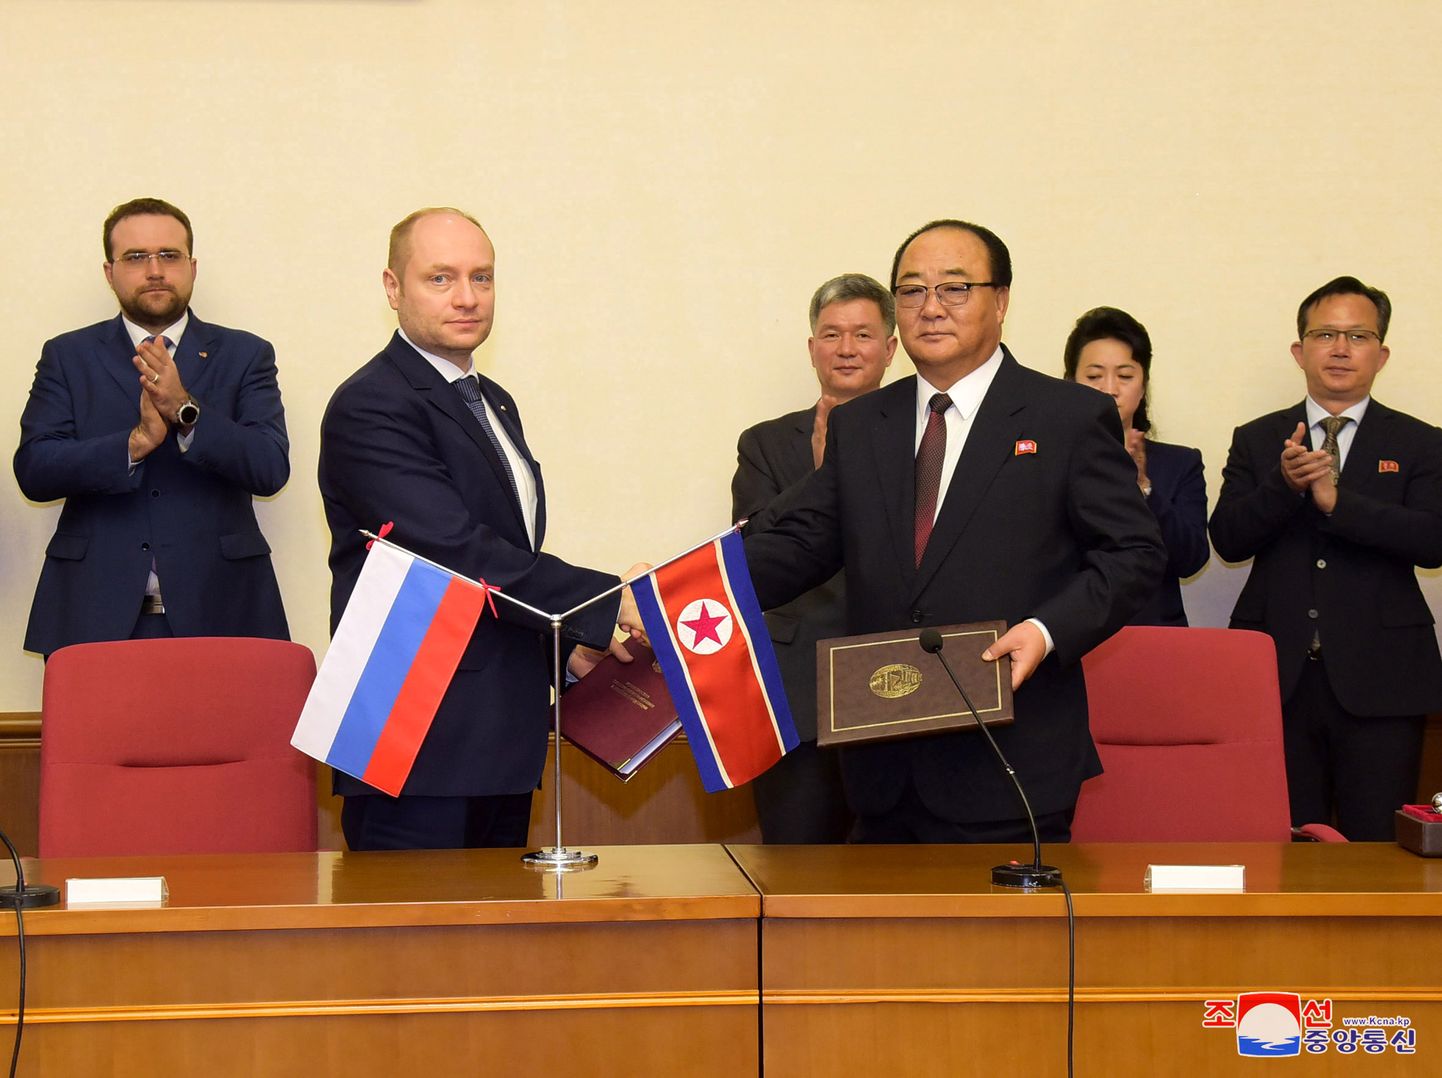 Põhja-Korea-Venemaa valitsustevahelise komitee kohtumine.